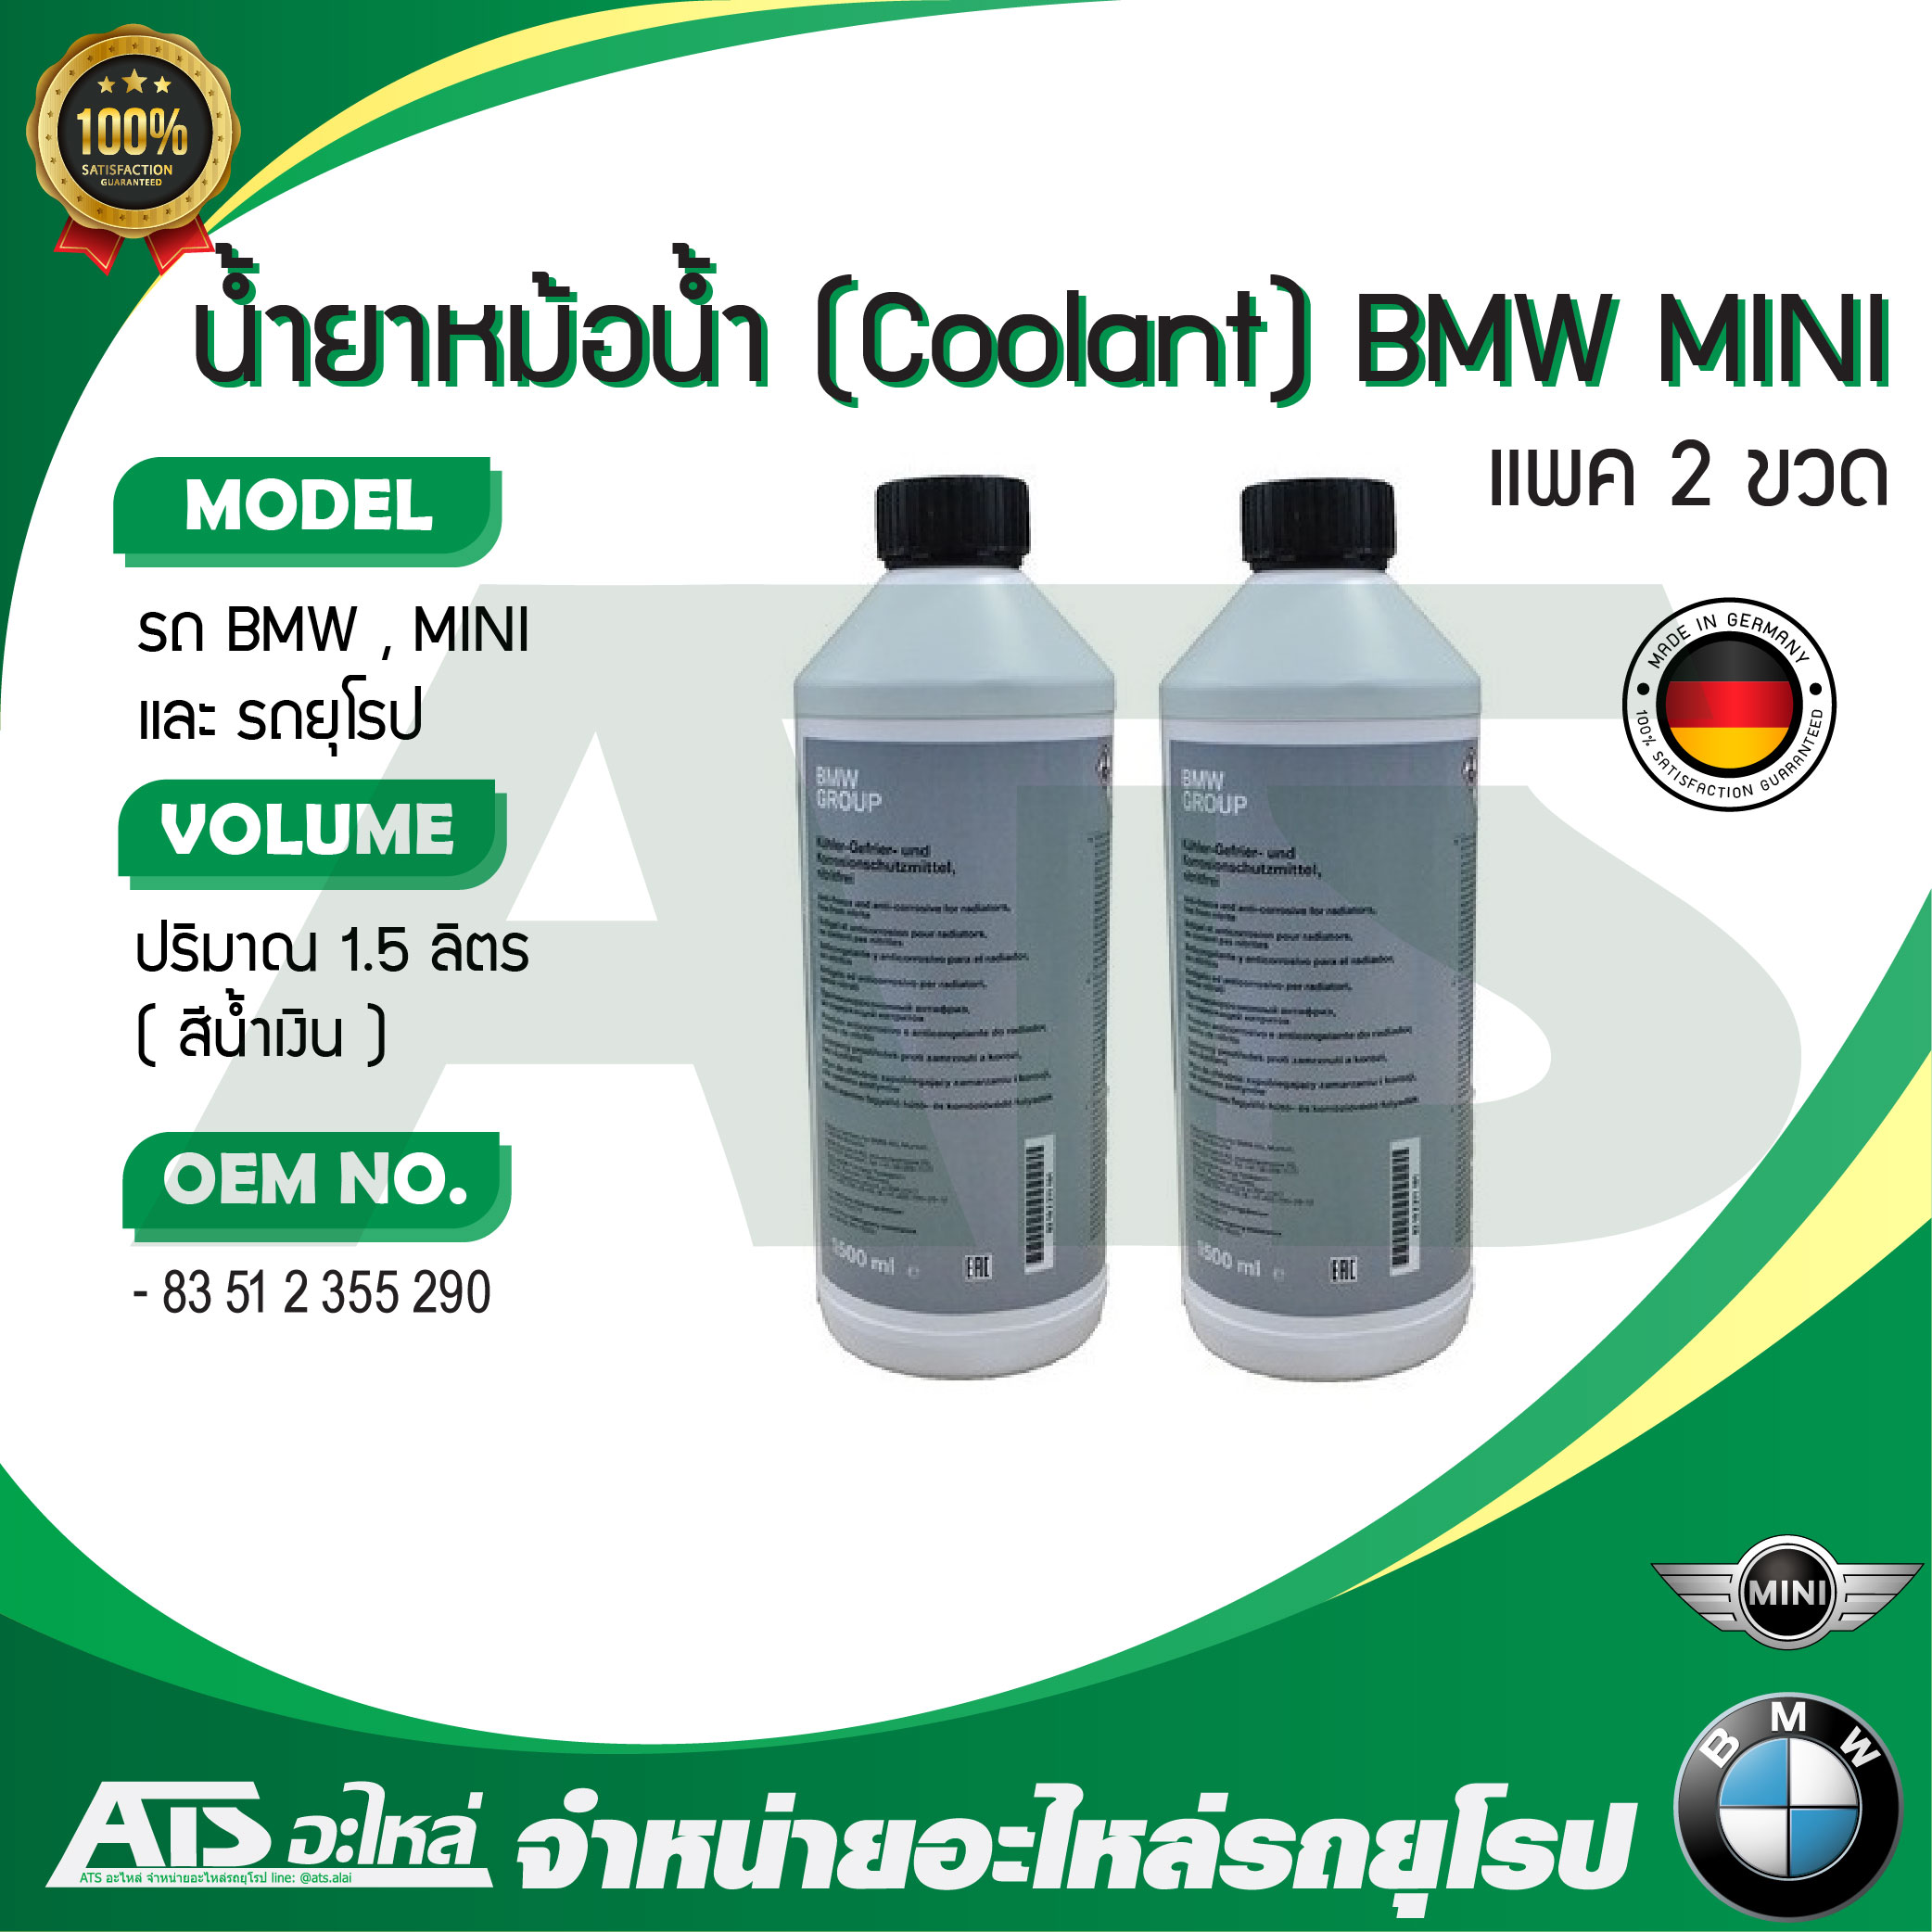 (แพค 2 ขวด) น้ำยาหม้อน้ำ น้ำยาหล่อเย็น (Coolant) BMW / MINI ชนิดเข้มข้น ขนาด 1.5 ลิตร น้ำสีน้ำเงิน (OE No. 83 51 2 355 290) Made in Germany